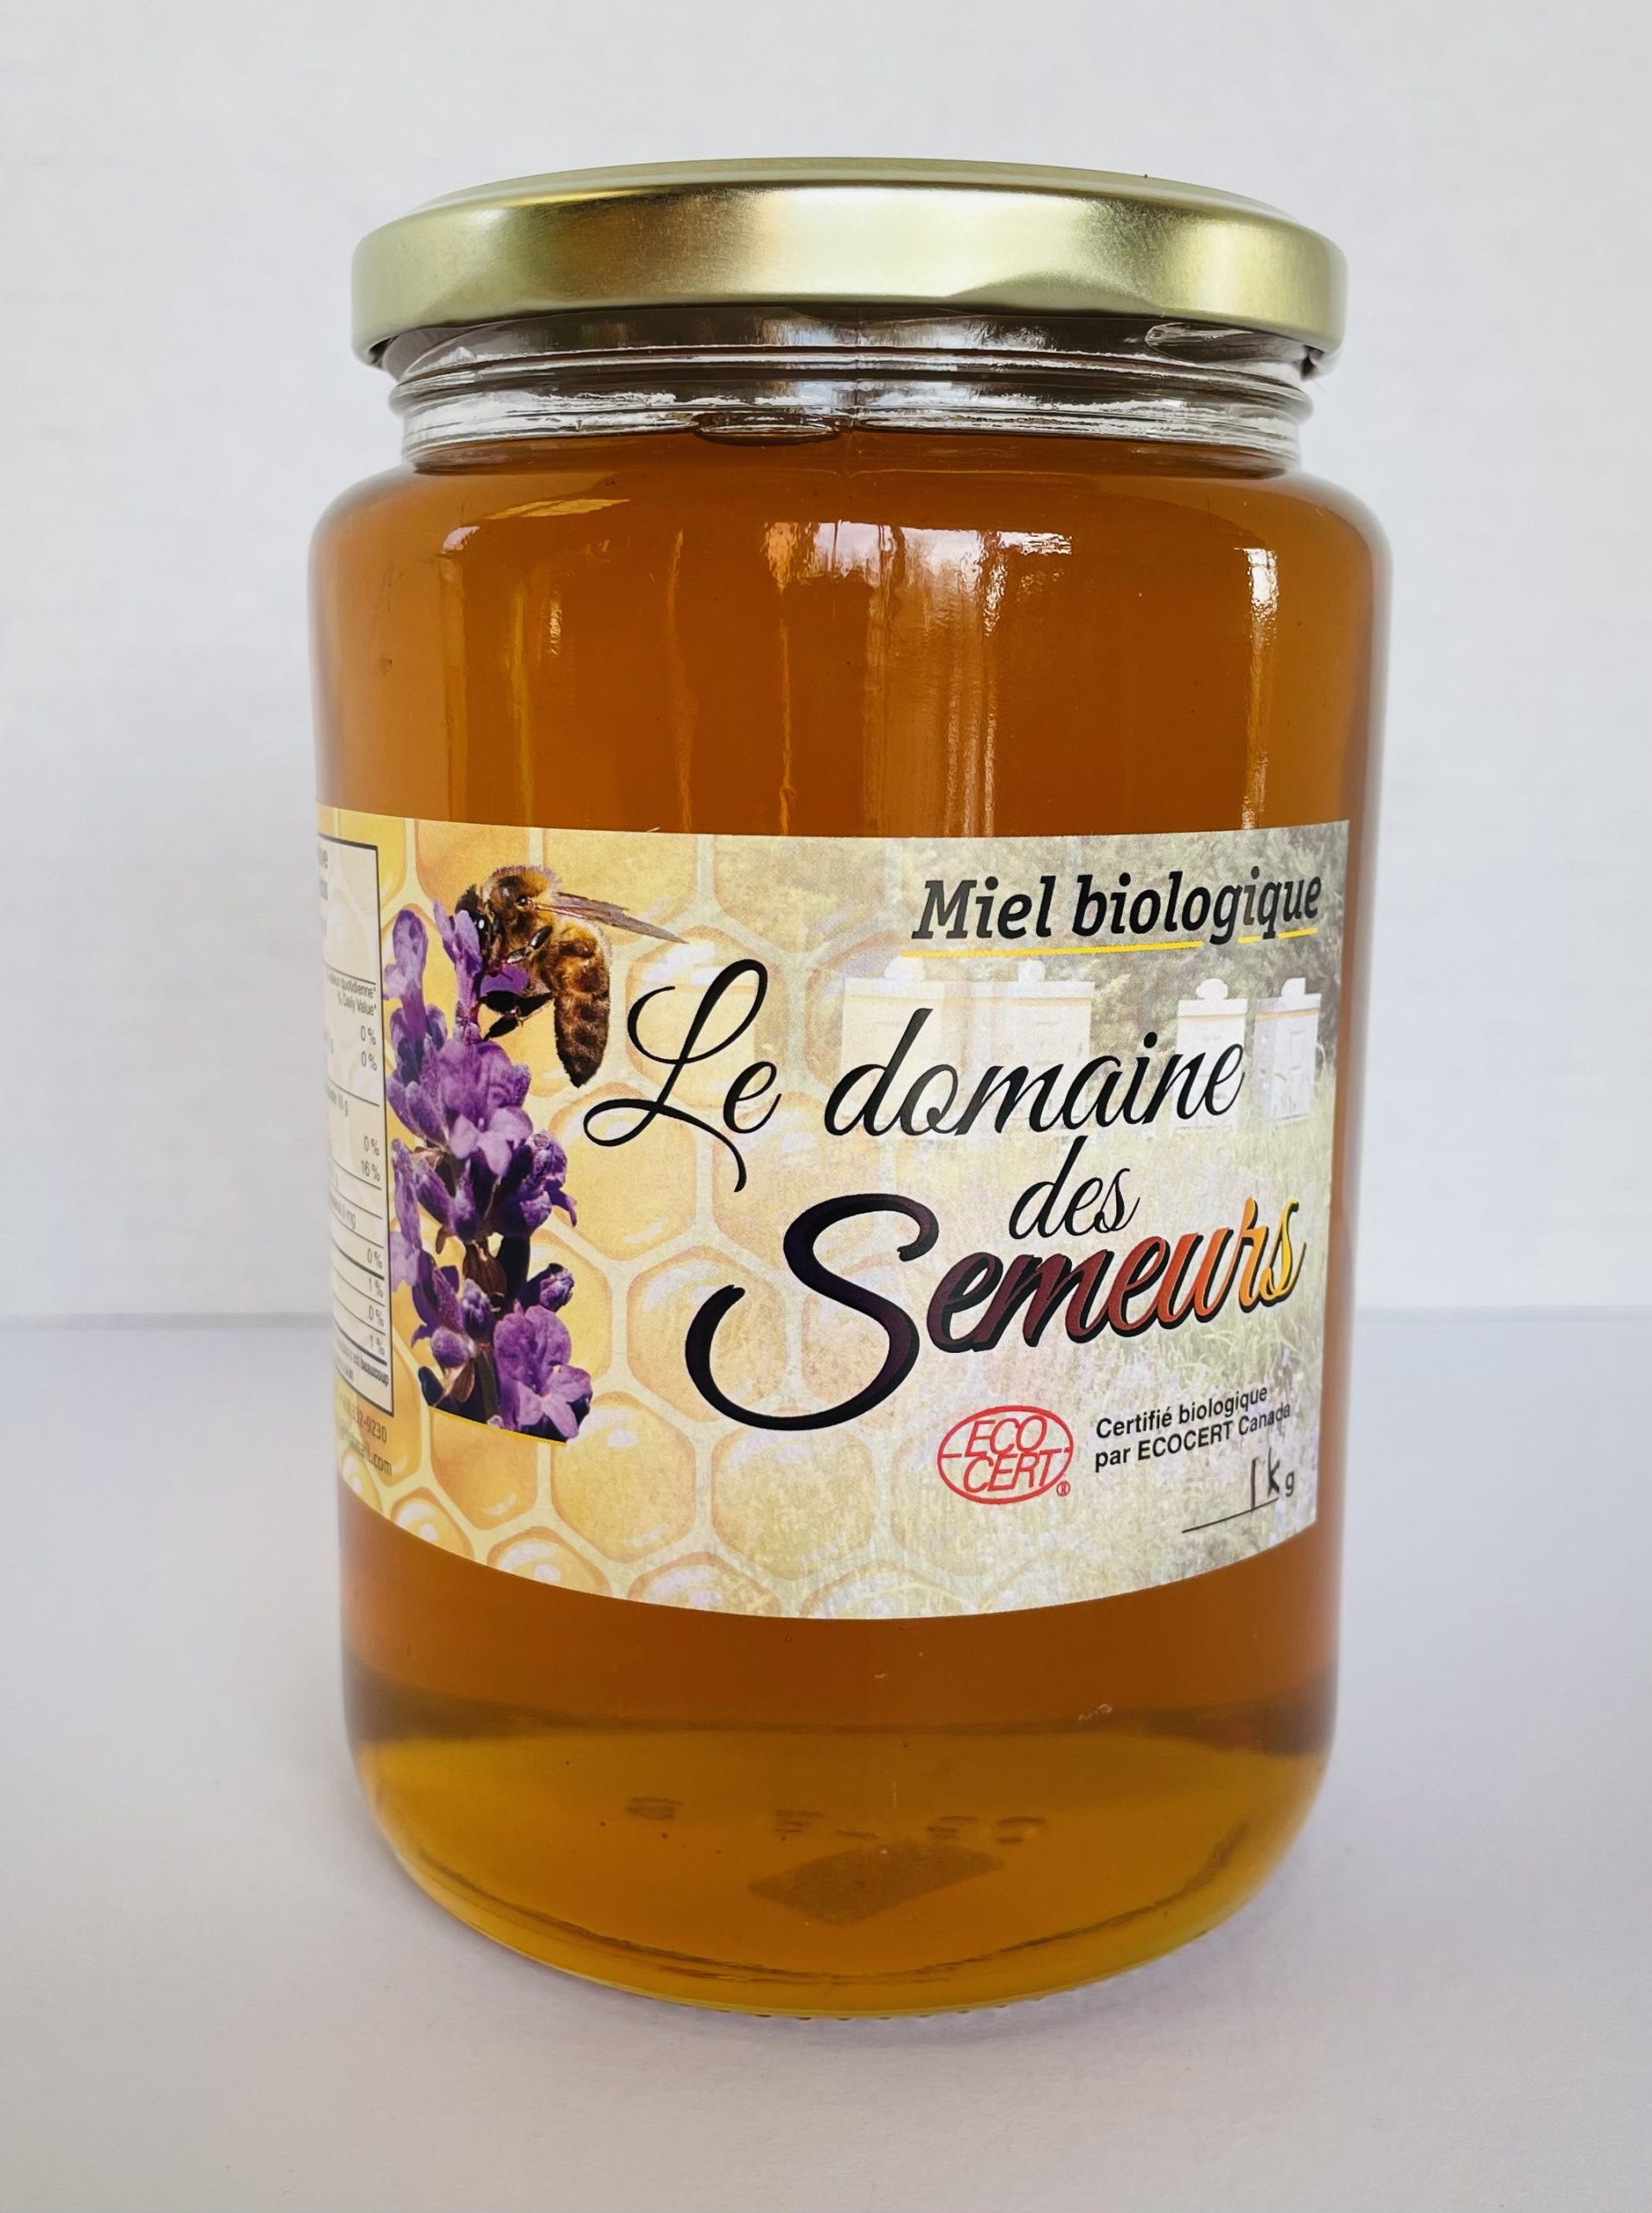 Miel biologique* – Domaine des Semeurs